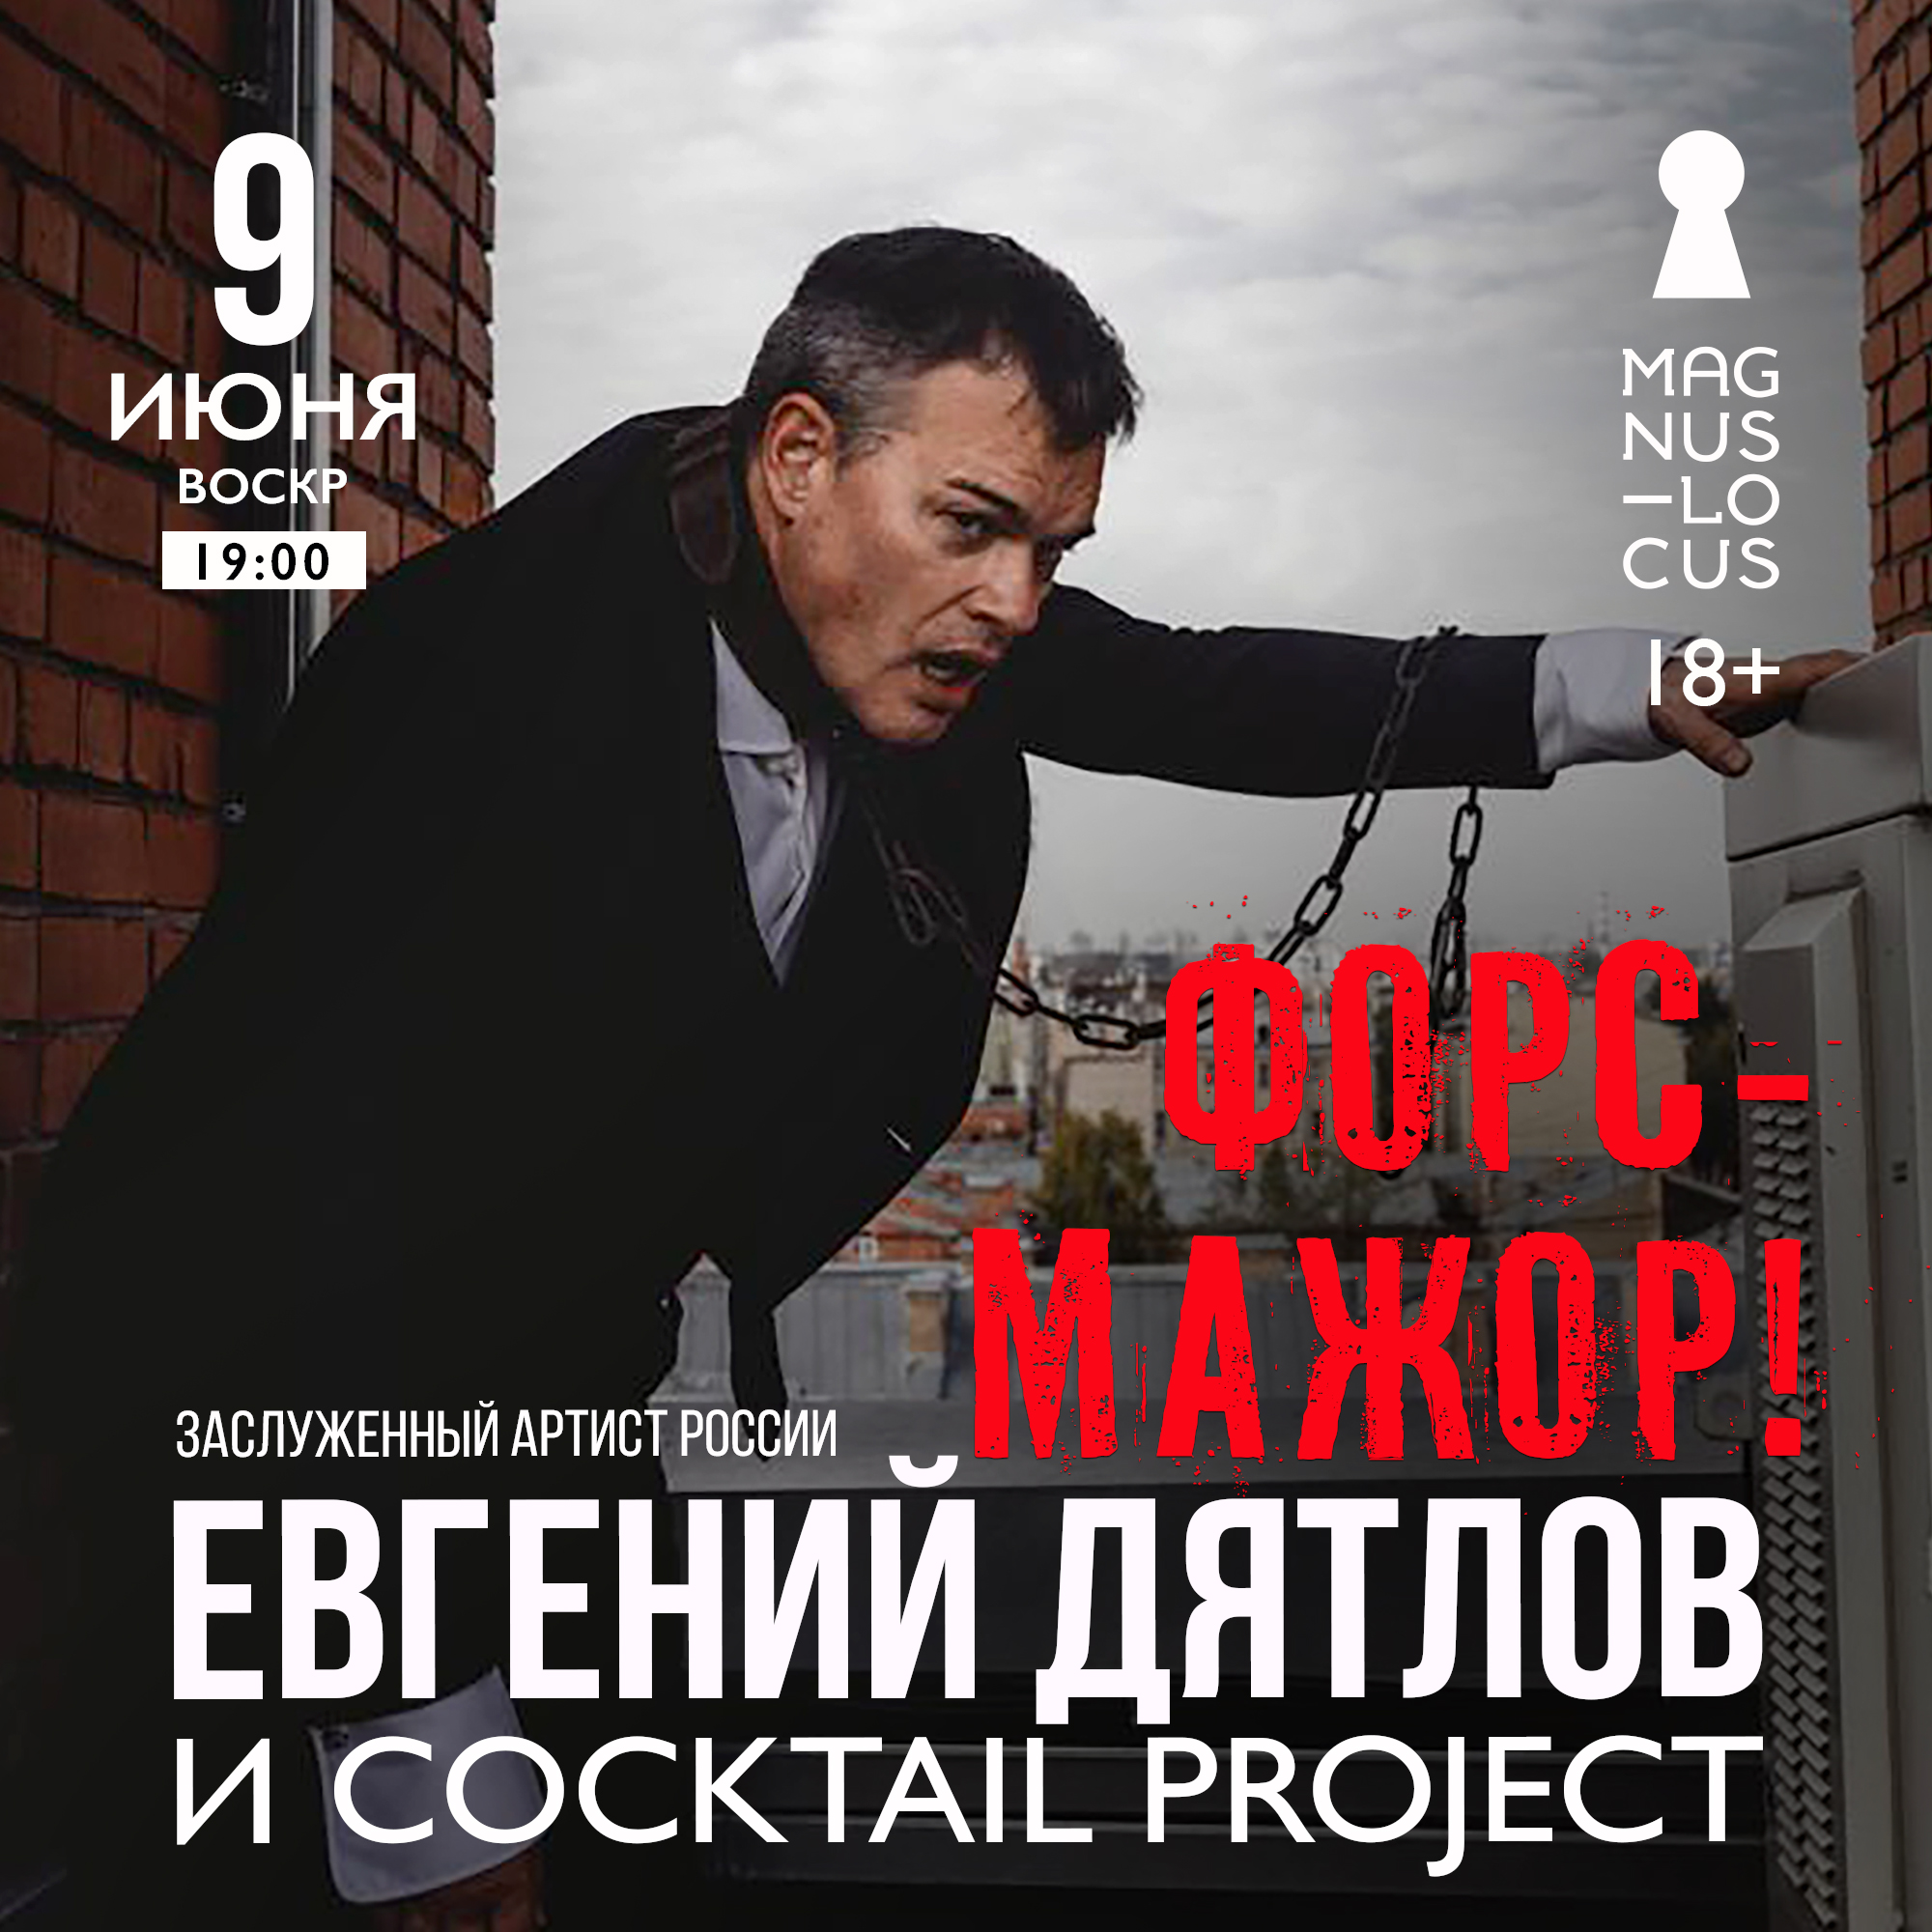 Заслуженный артист России ЕВГЕНИЙ ДЯТЛОВ и группа Cocktail Project